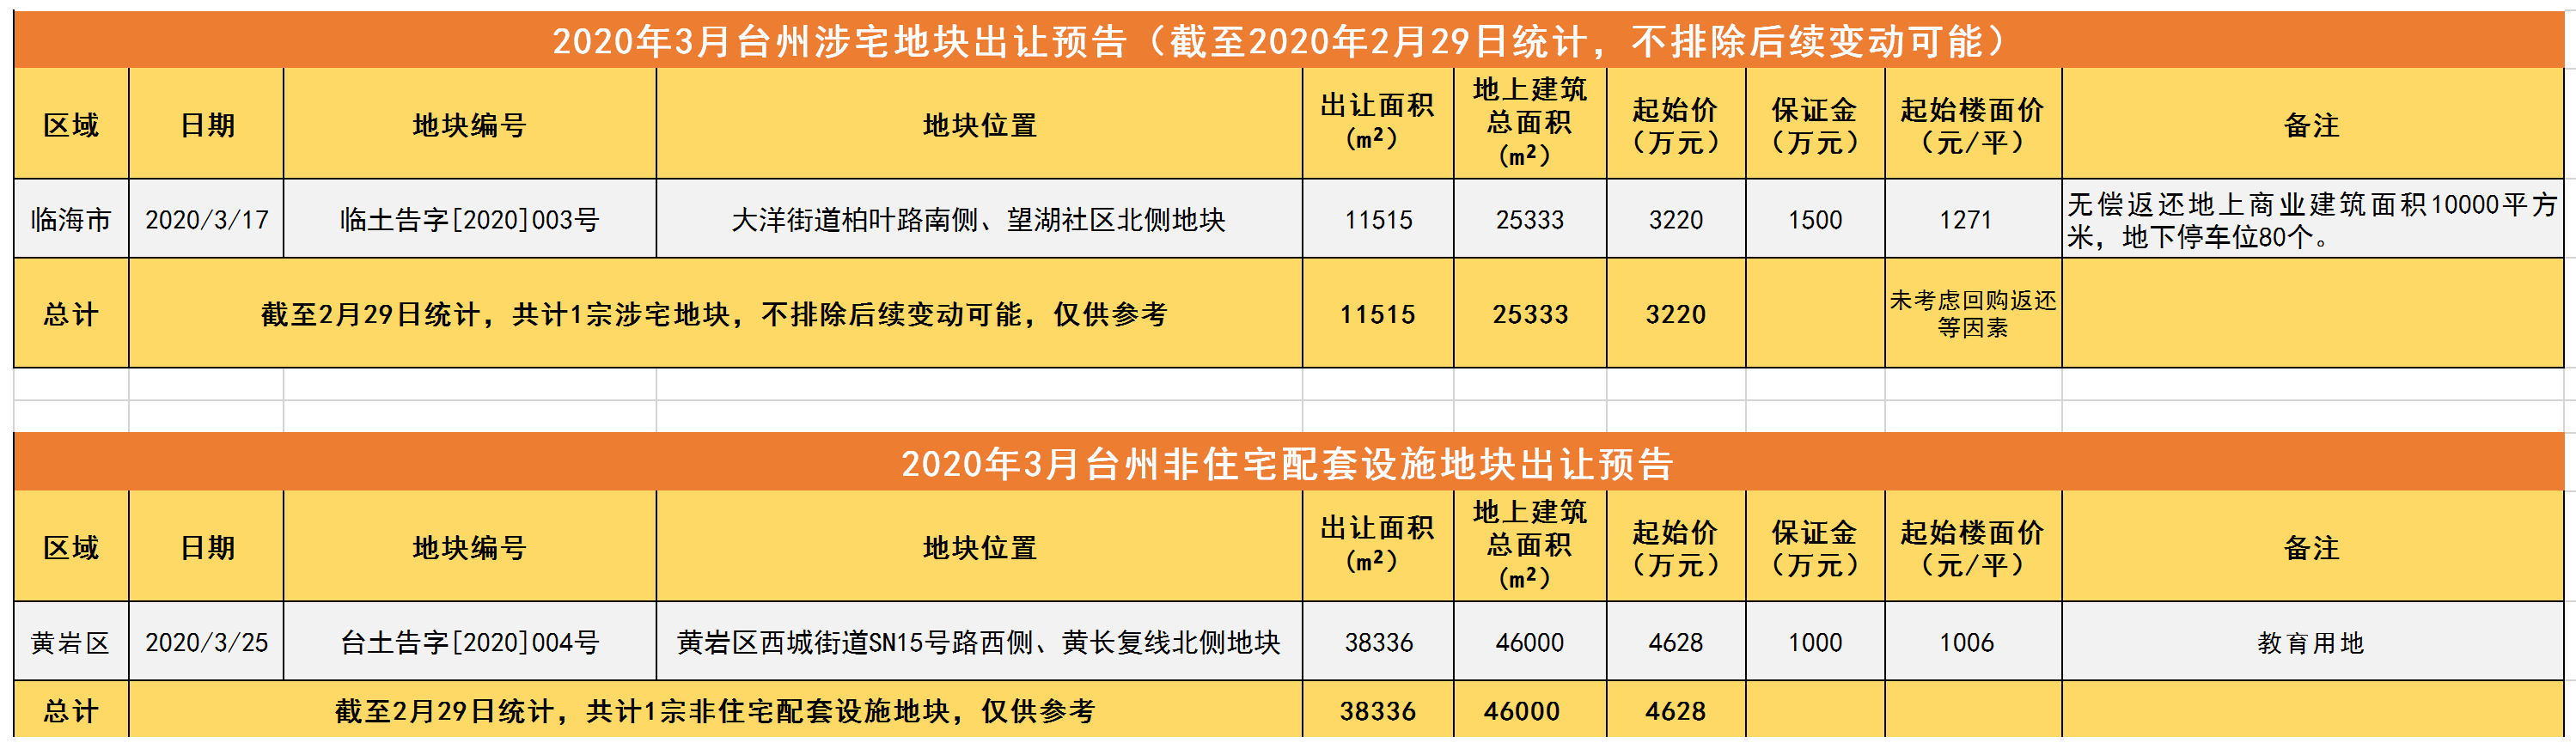 台州土地市场2020年2月简报